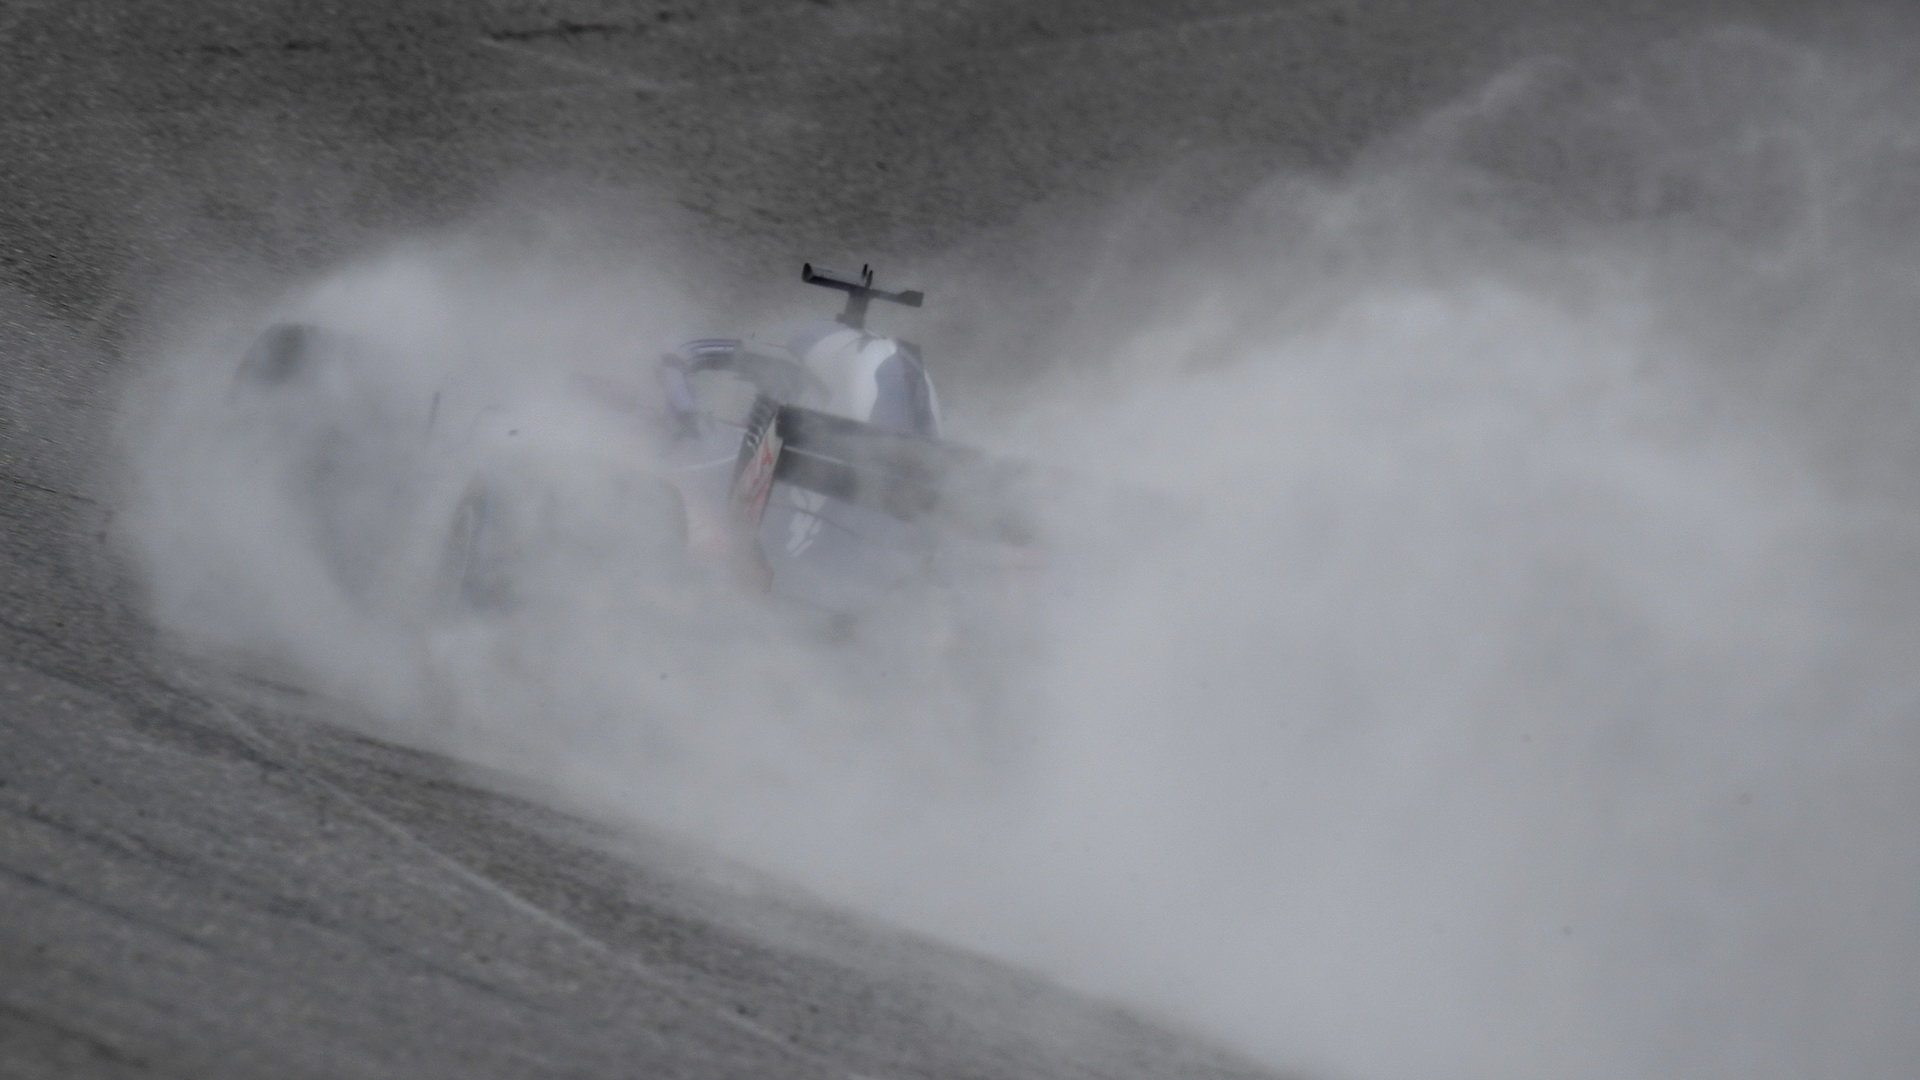 Pravidla FIA zřejmě tolik nepočítají se specifickými okolnostmi na mokré trati